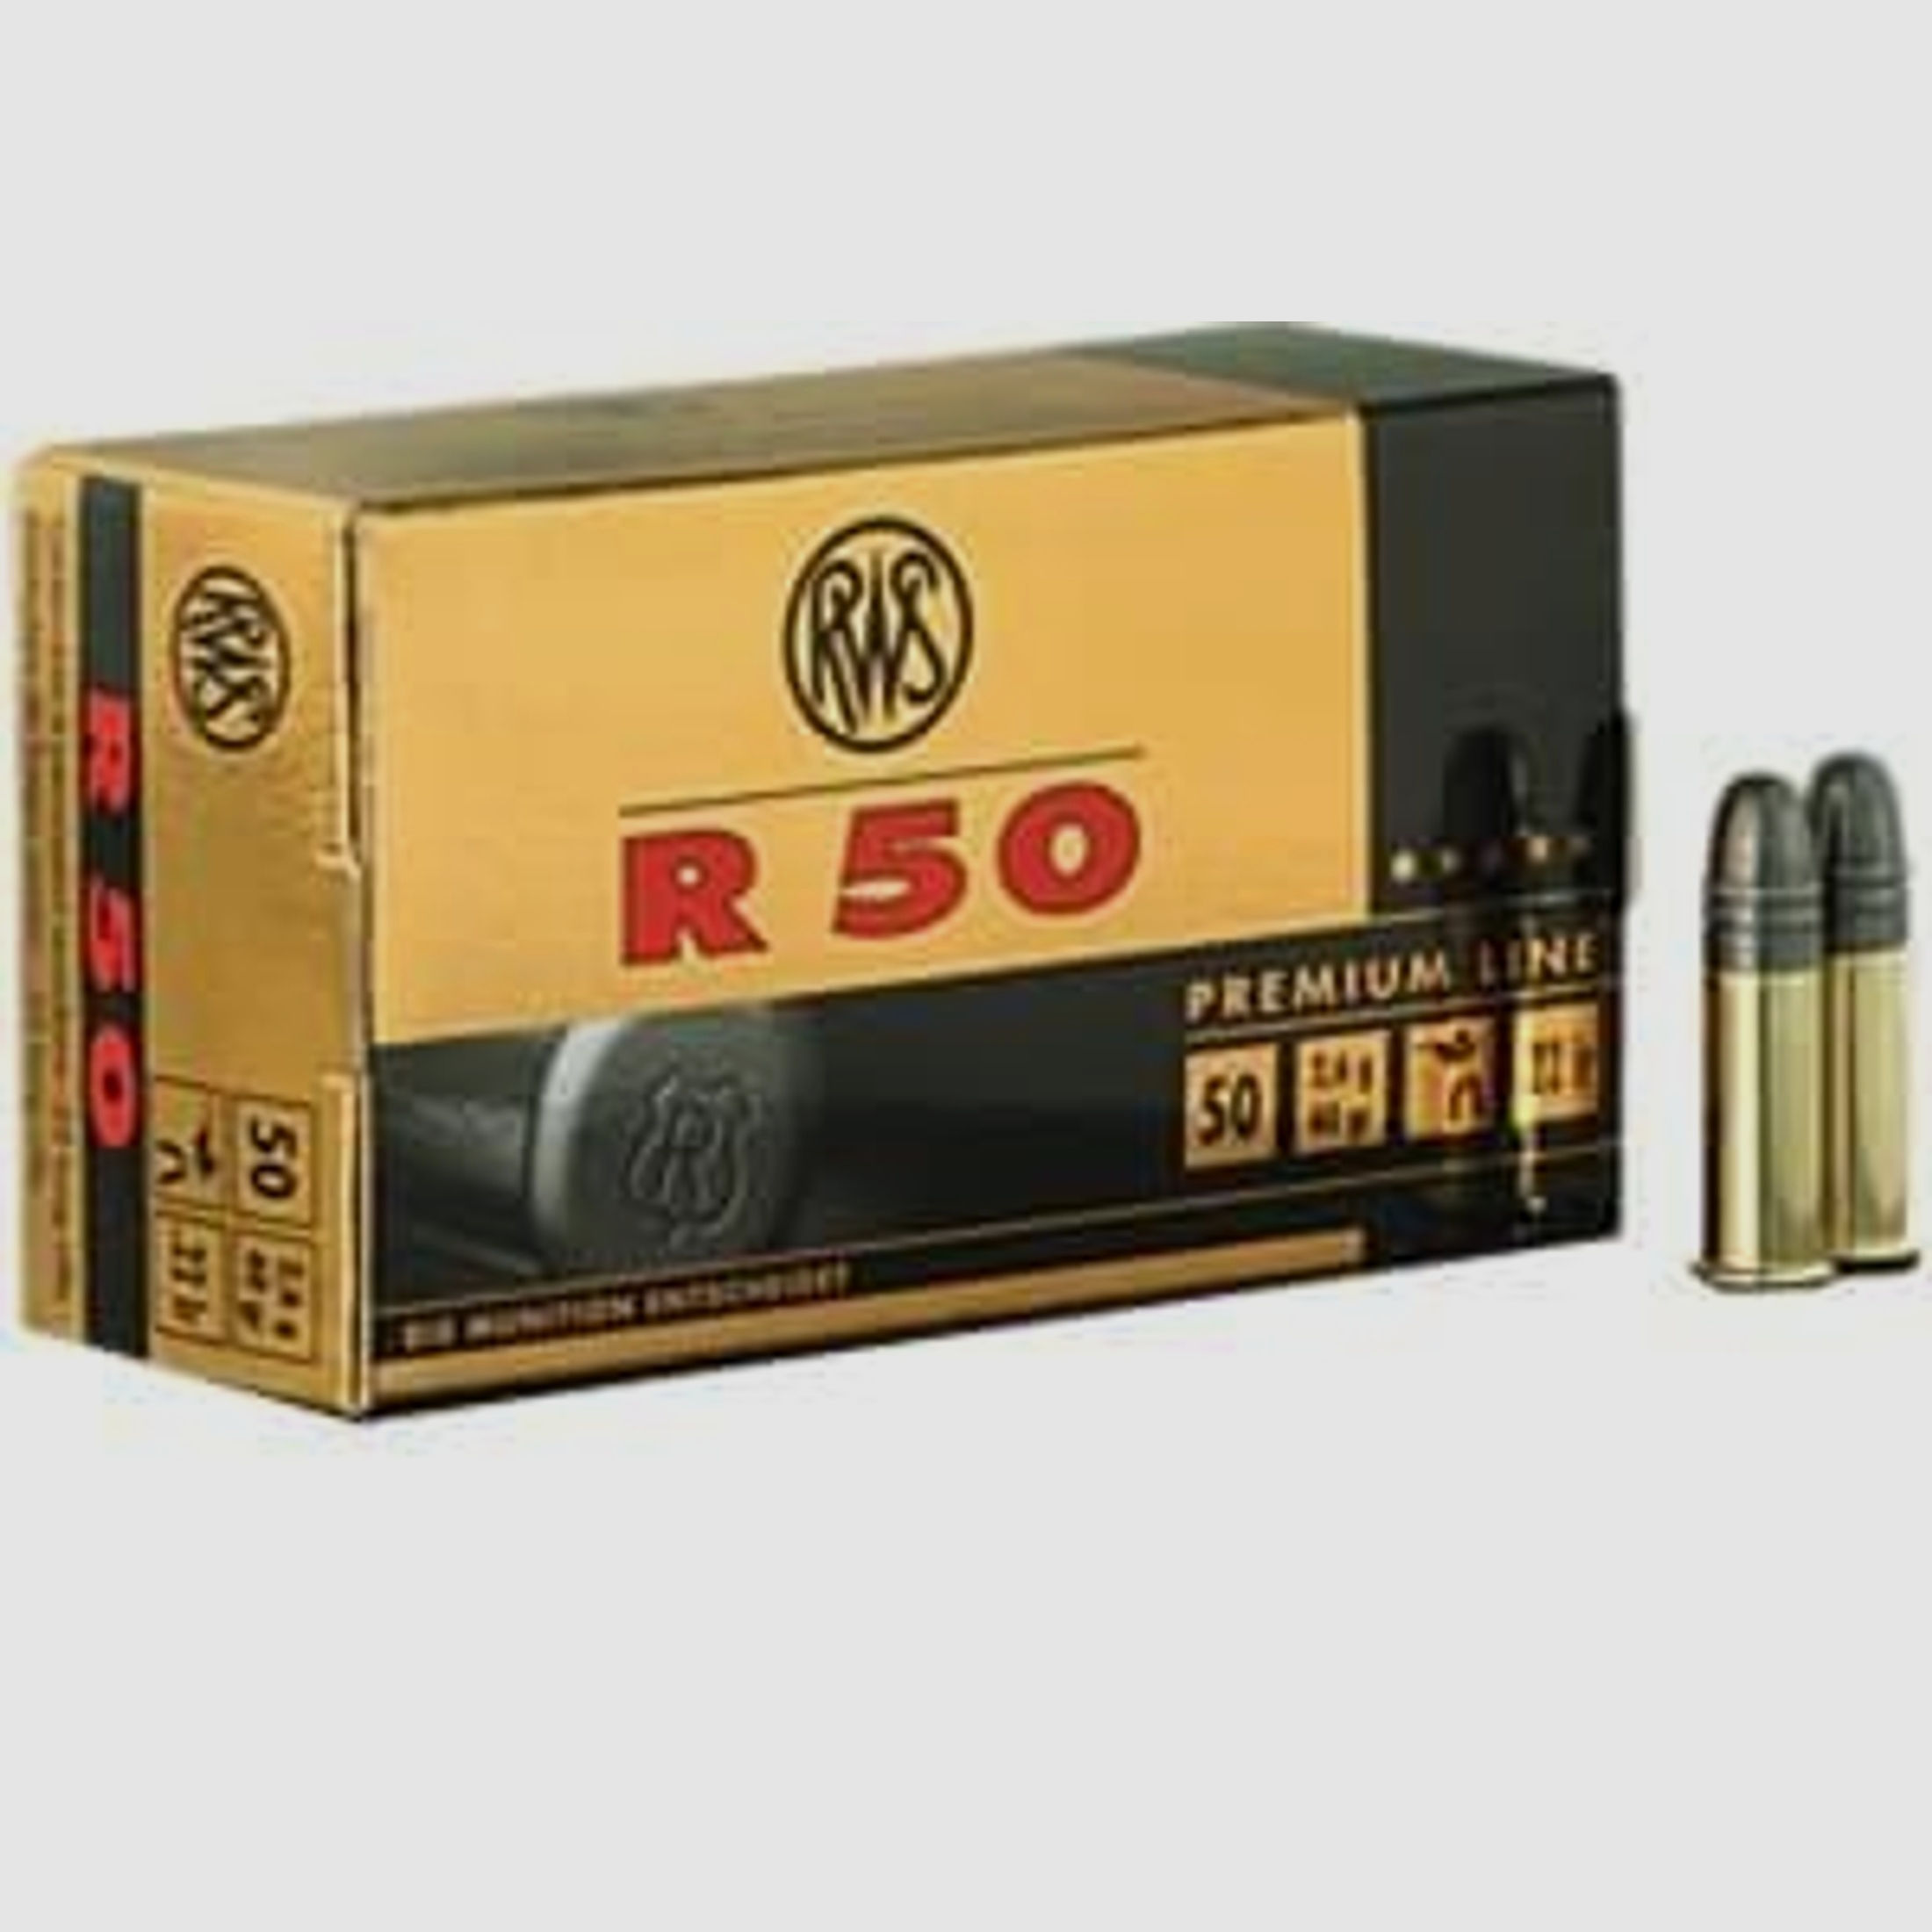 RWS KK-Munition .22lr R50 50 Stk  Premium Line